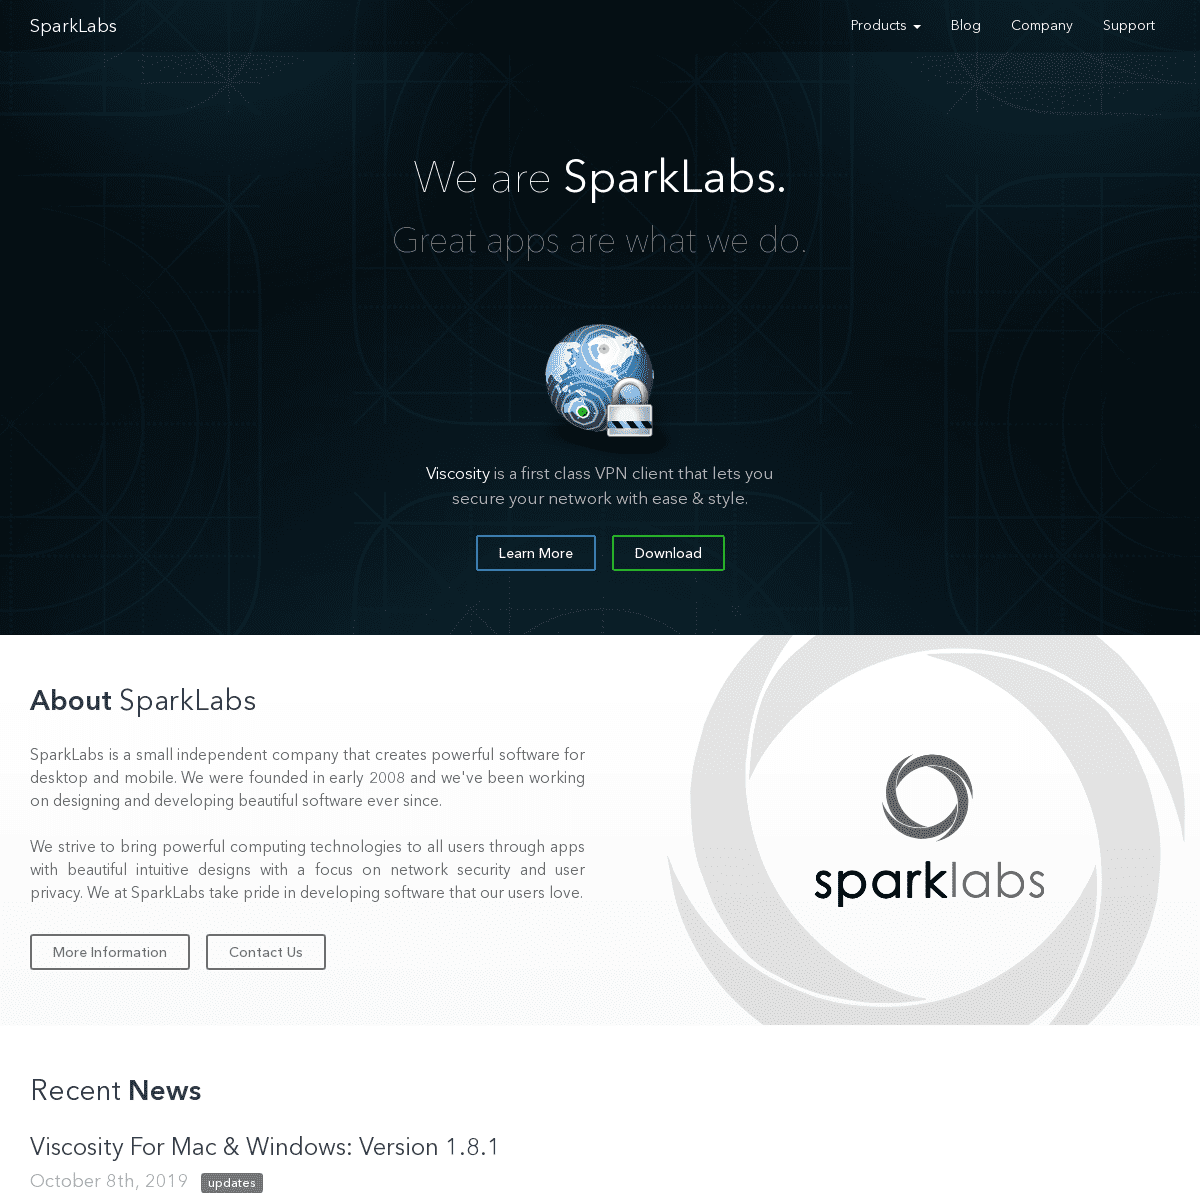 A complete backup of sparklabs.com